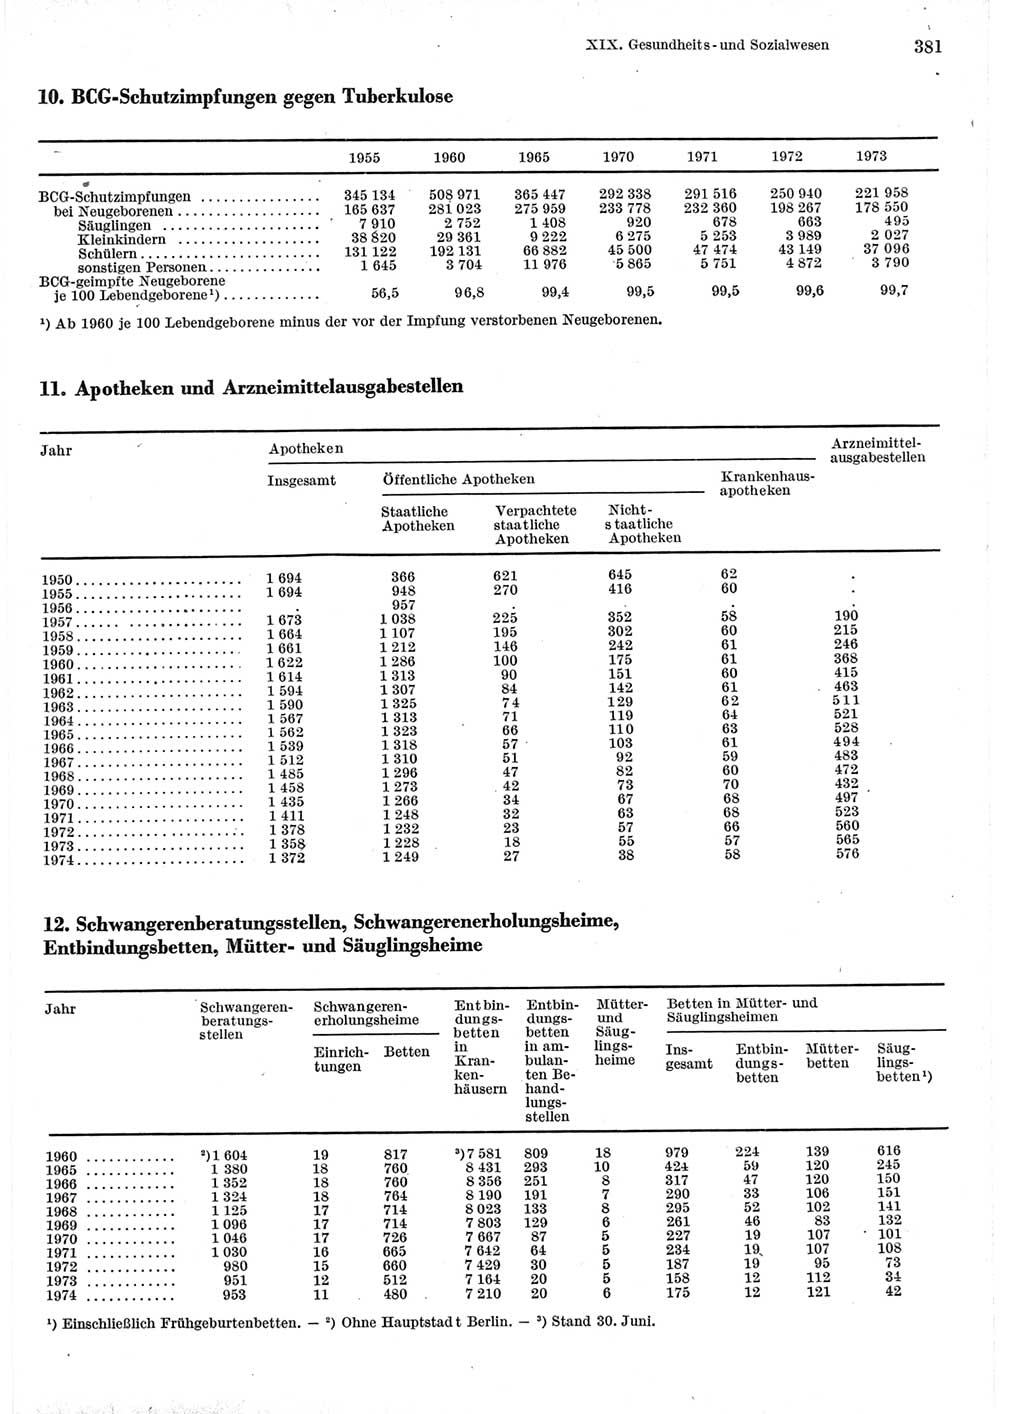 Statistisches Jahrbuch der Deutschen Demokratischen Republik (DDR) 1975, Seite 381 (Stat. Jb. DDR 1975, S. 381)